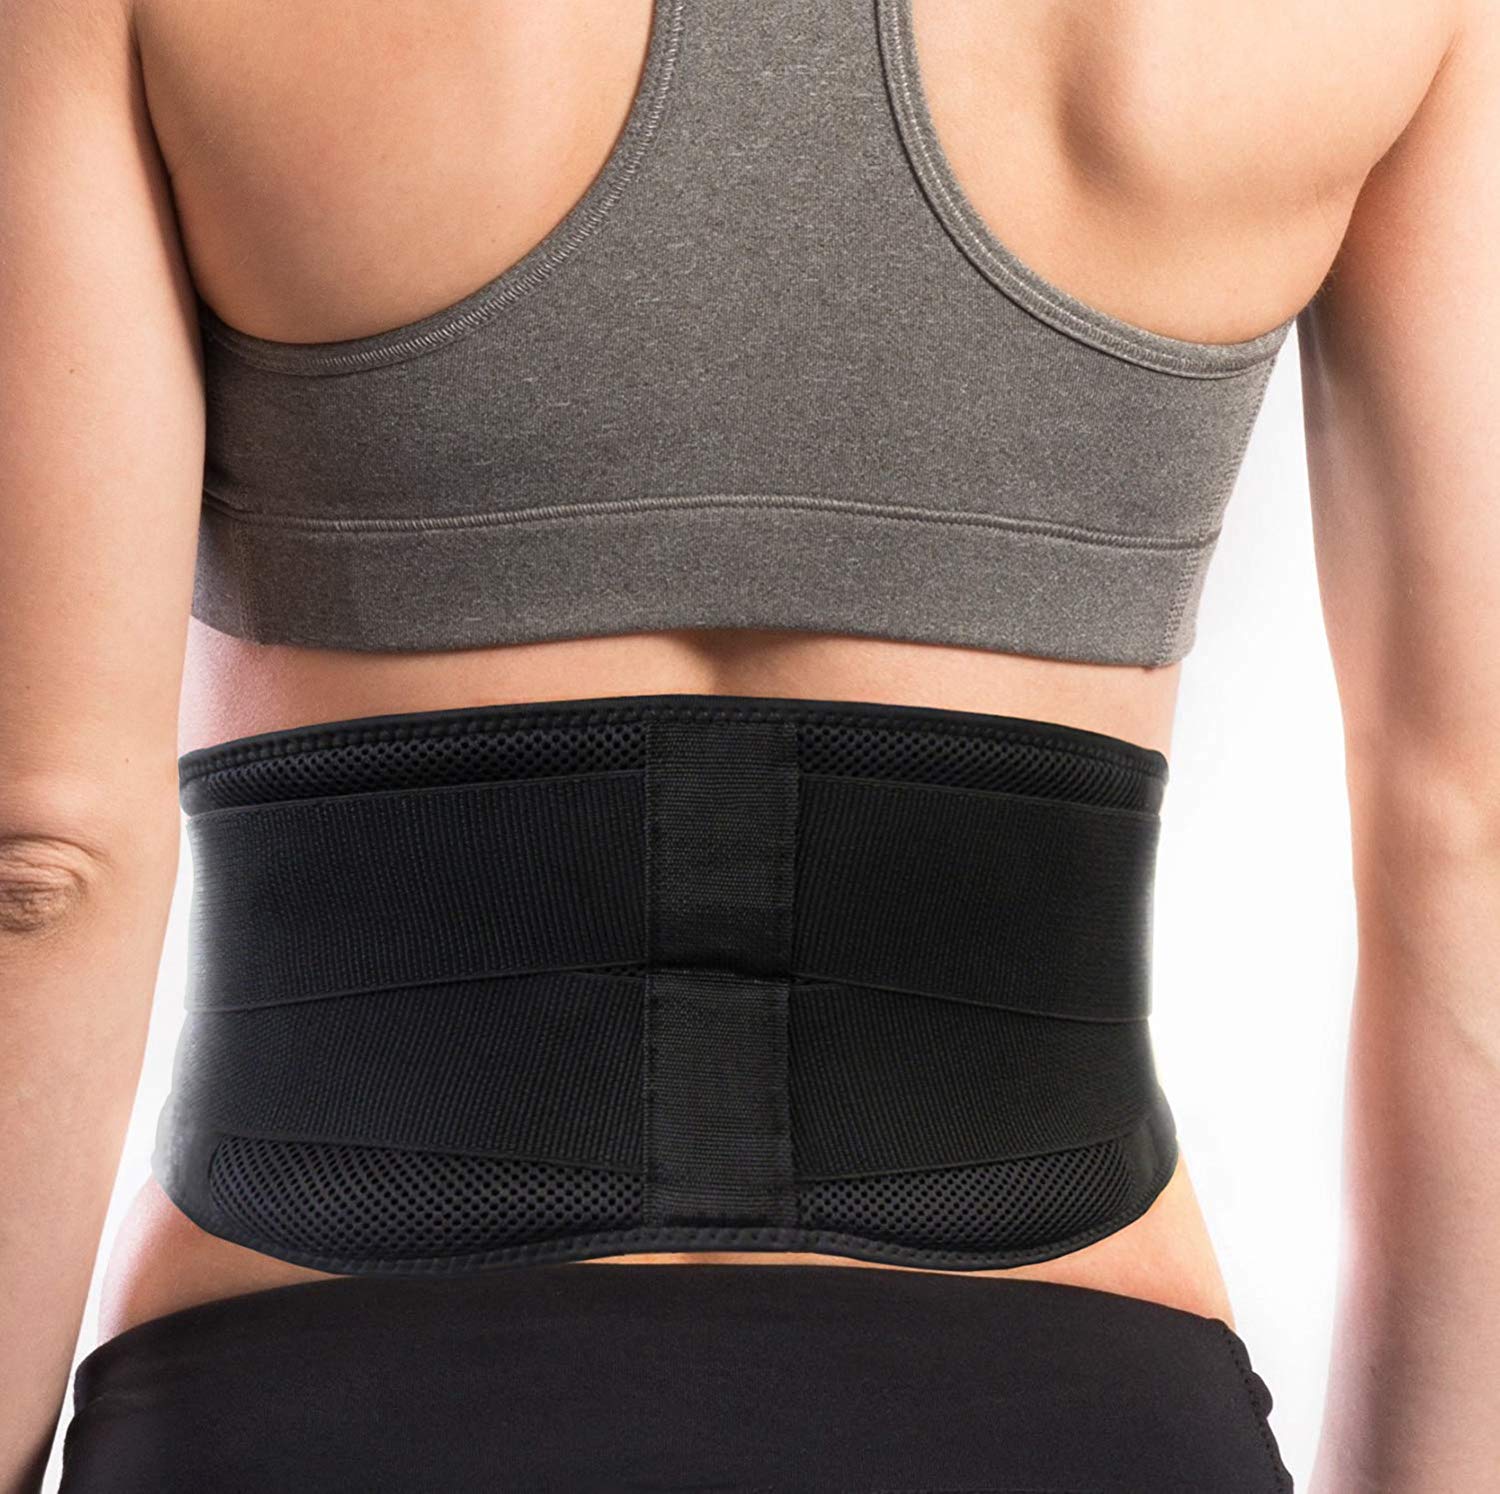 Best Lower Back Support Belt for Men & Women: Lumbar Support Self